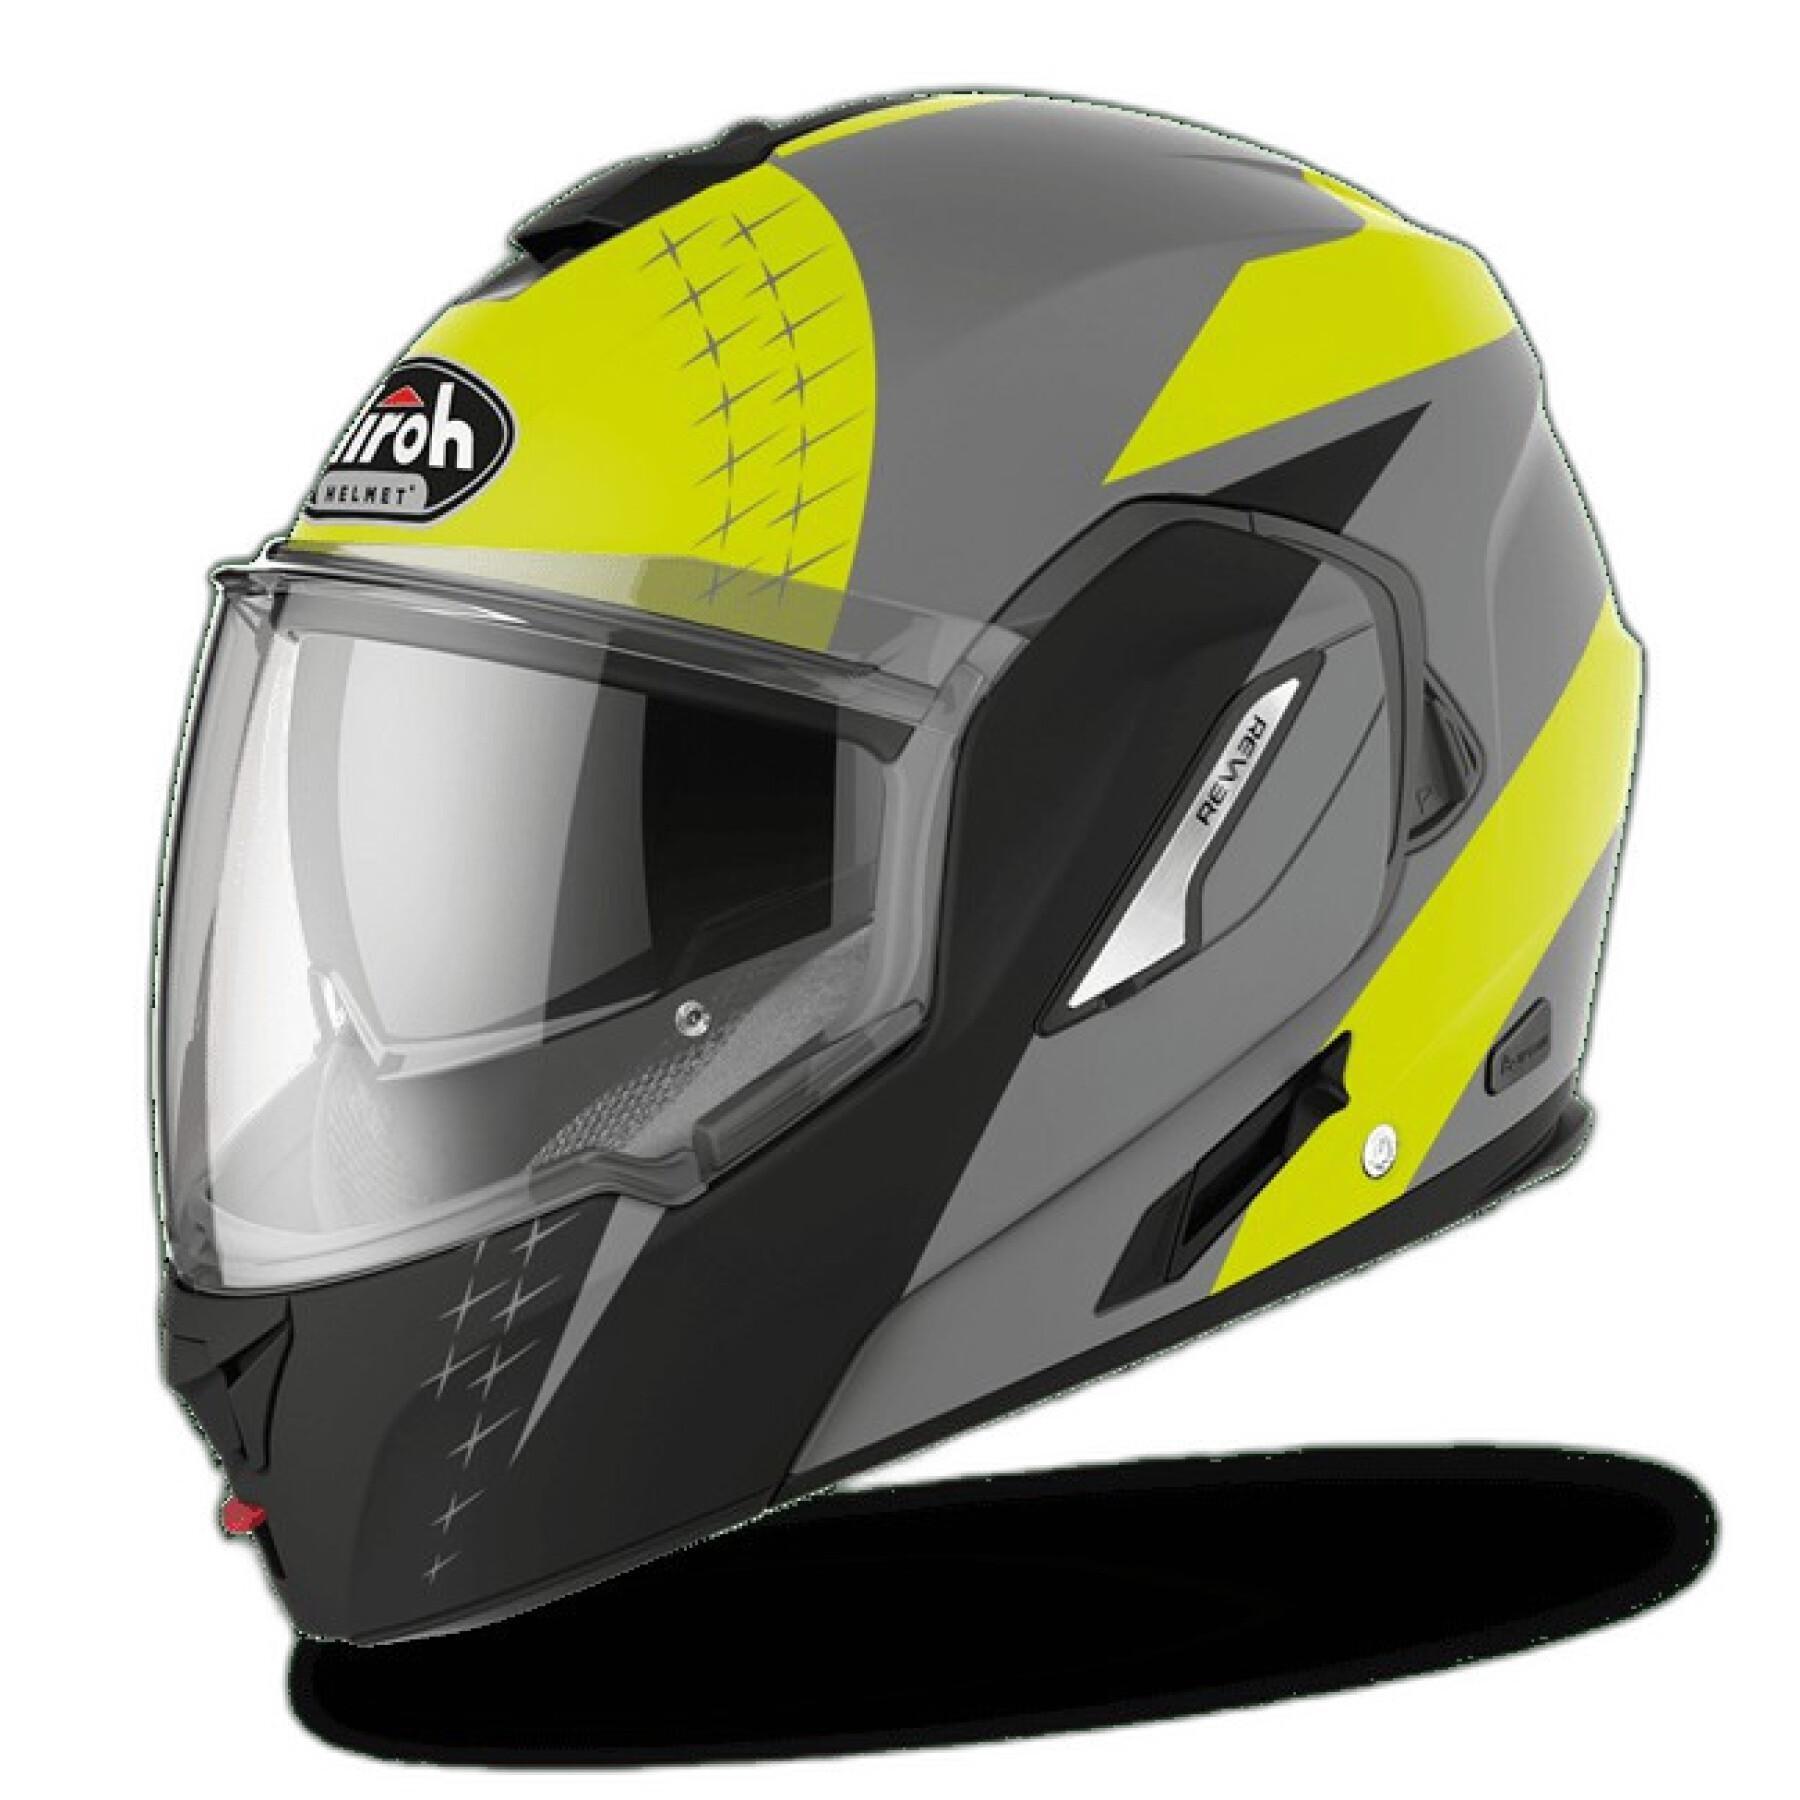 Modular motorcycle helmet Airoh Rev 19 Leaden